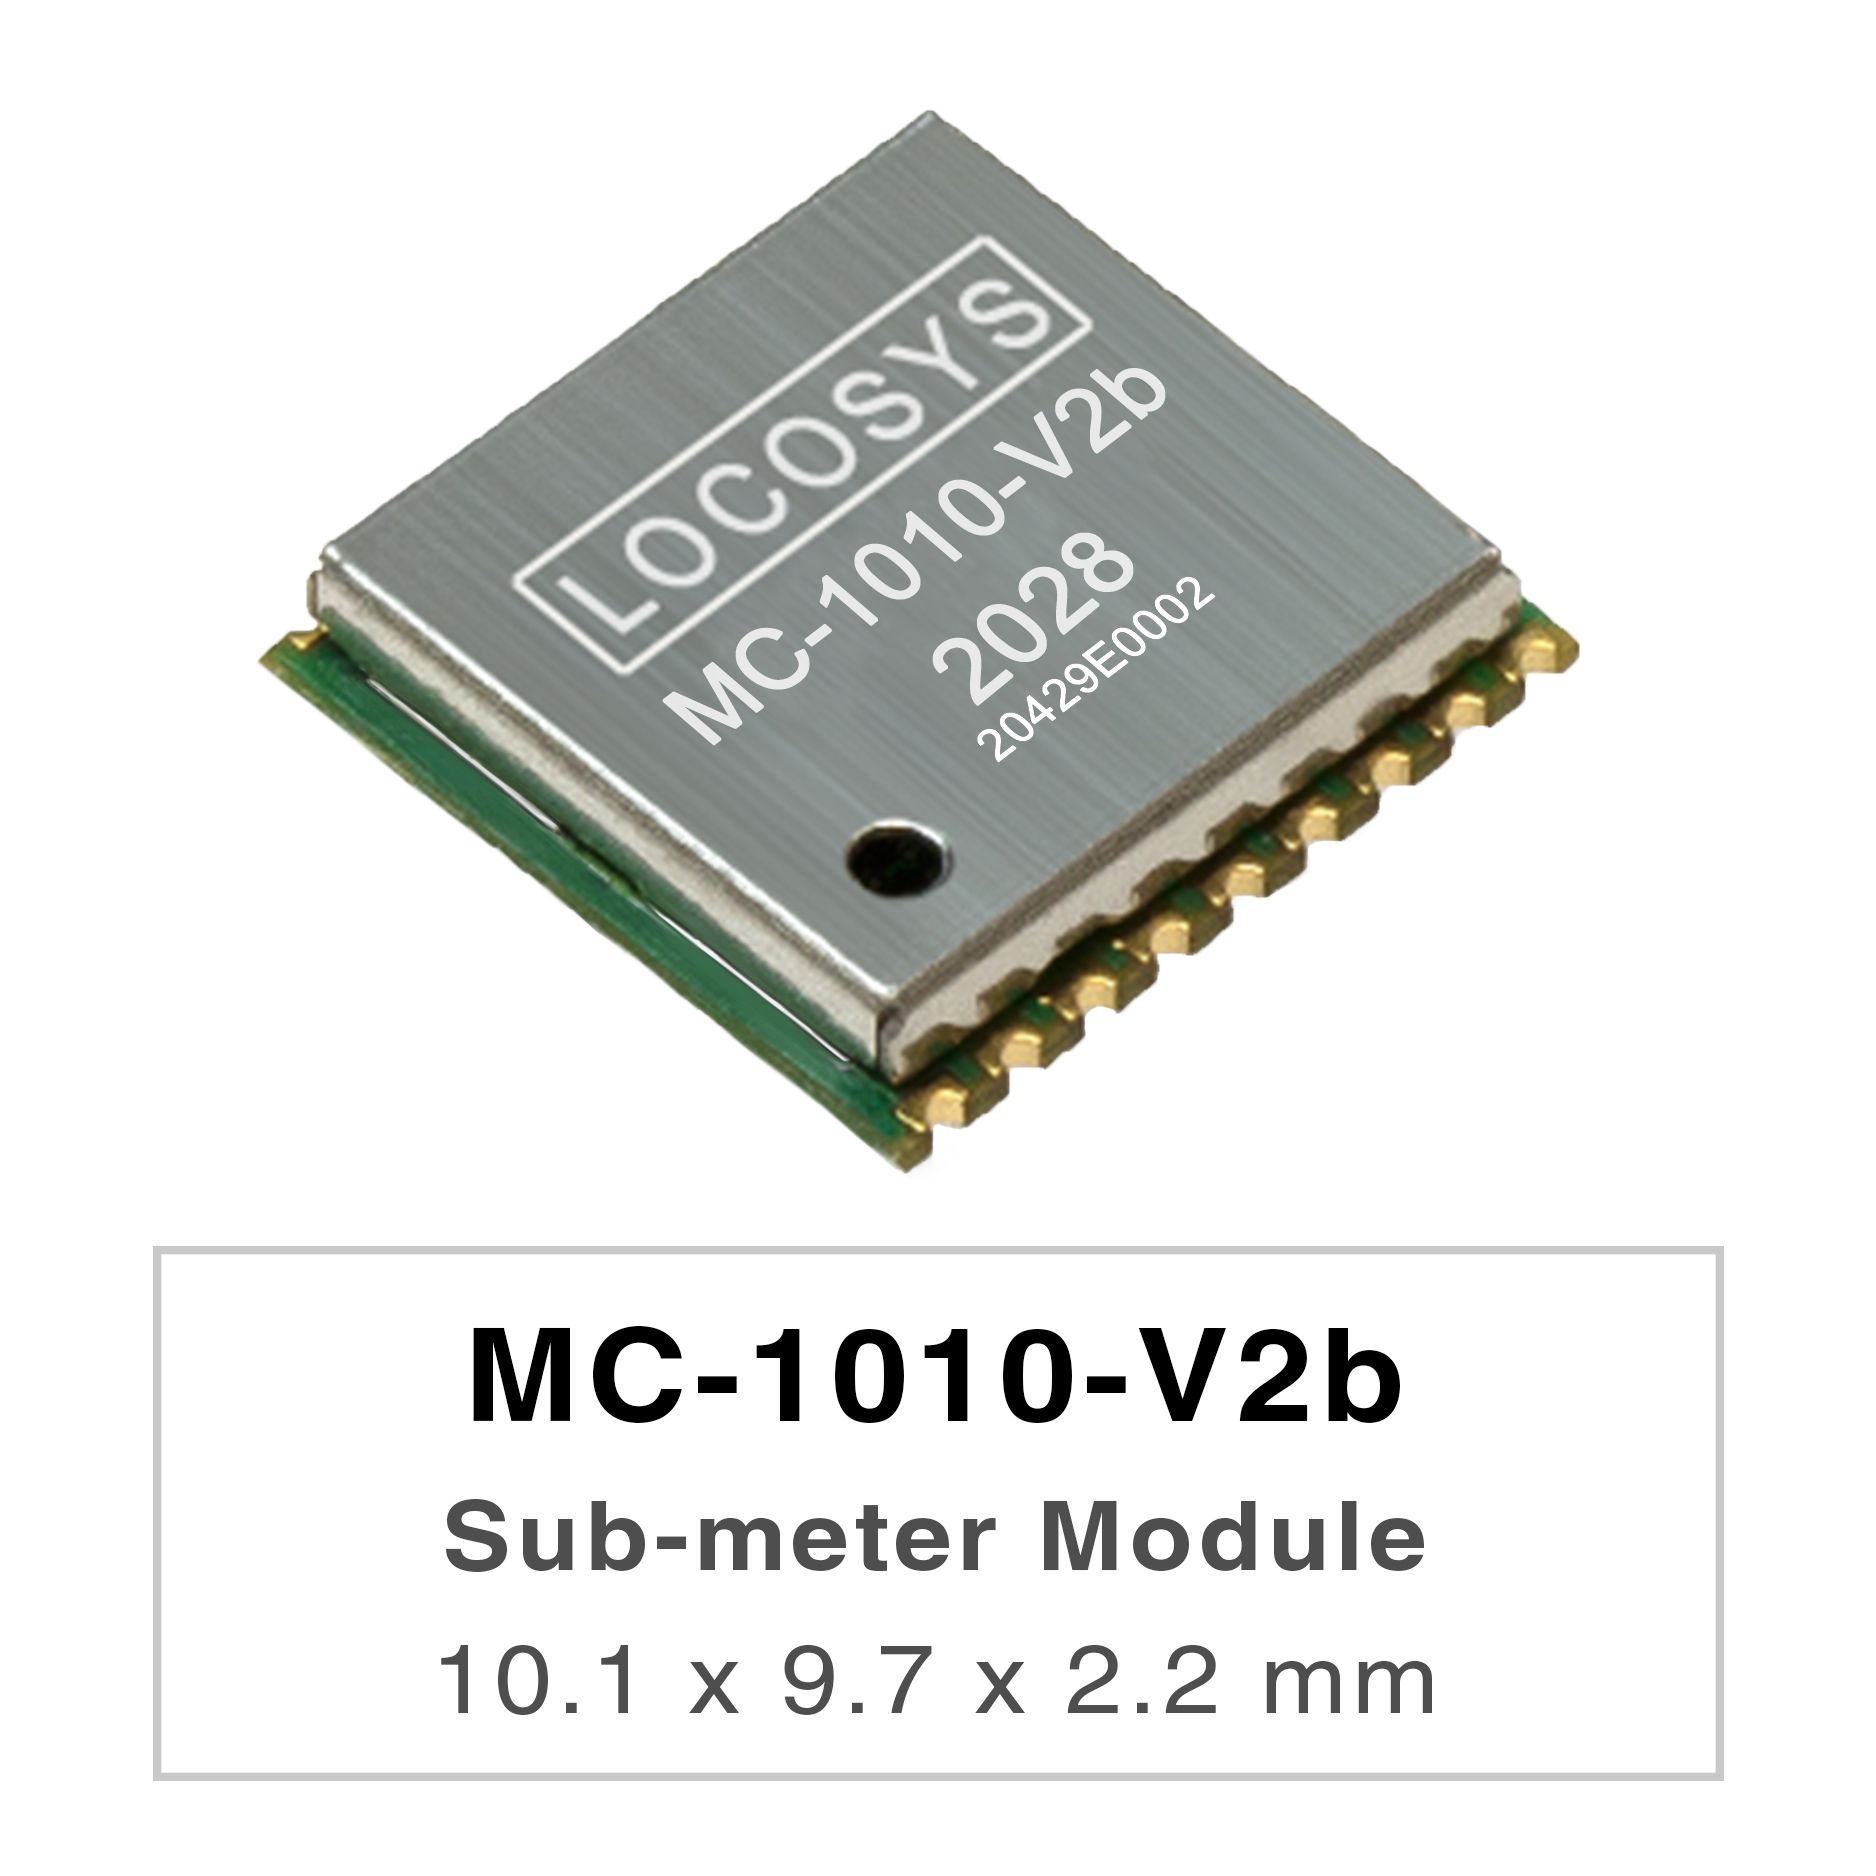 LOCOSYSLa série MC-1010-Vxx est constituée de modules de positionnement GNSS double bande hautes performances capables
     
de suivre tous les systèmes de navigation civile mondiaux. Ils adoptent un processus 12 nm et intègrent
     
une architecture de gestion de l'énergie efficace pour offrir une faible consommation et une sensibilité élevée.